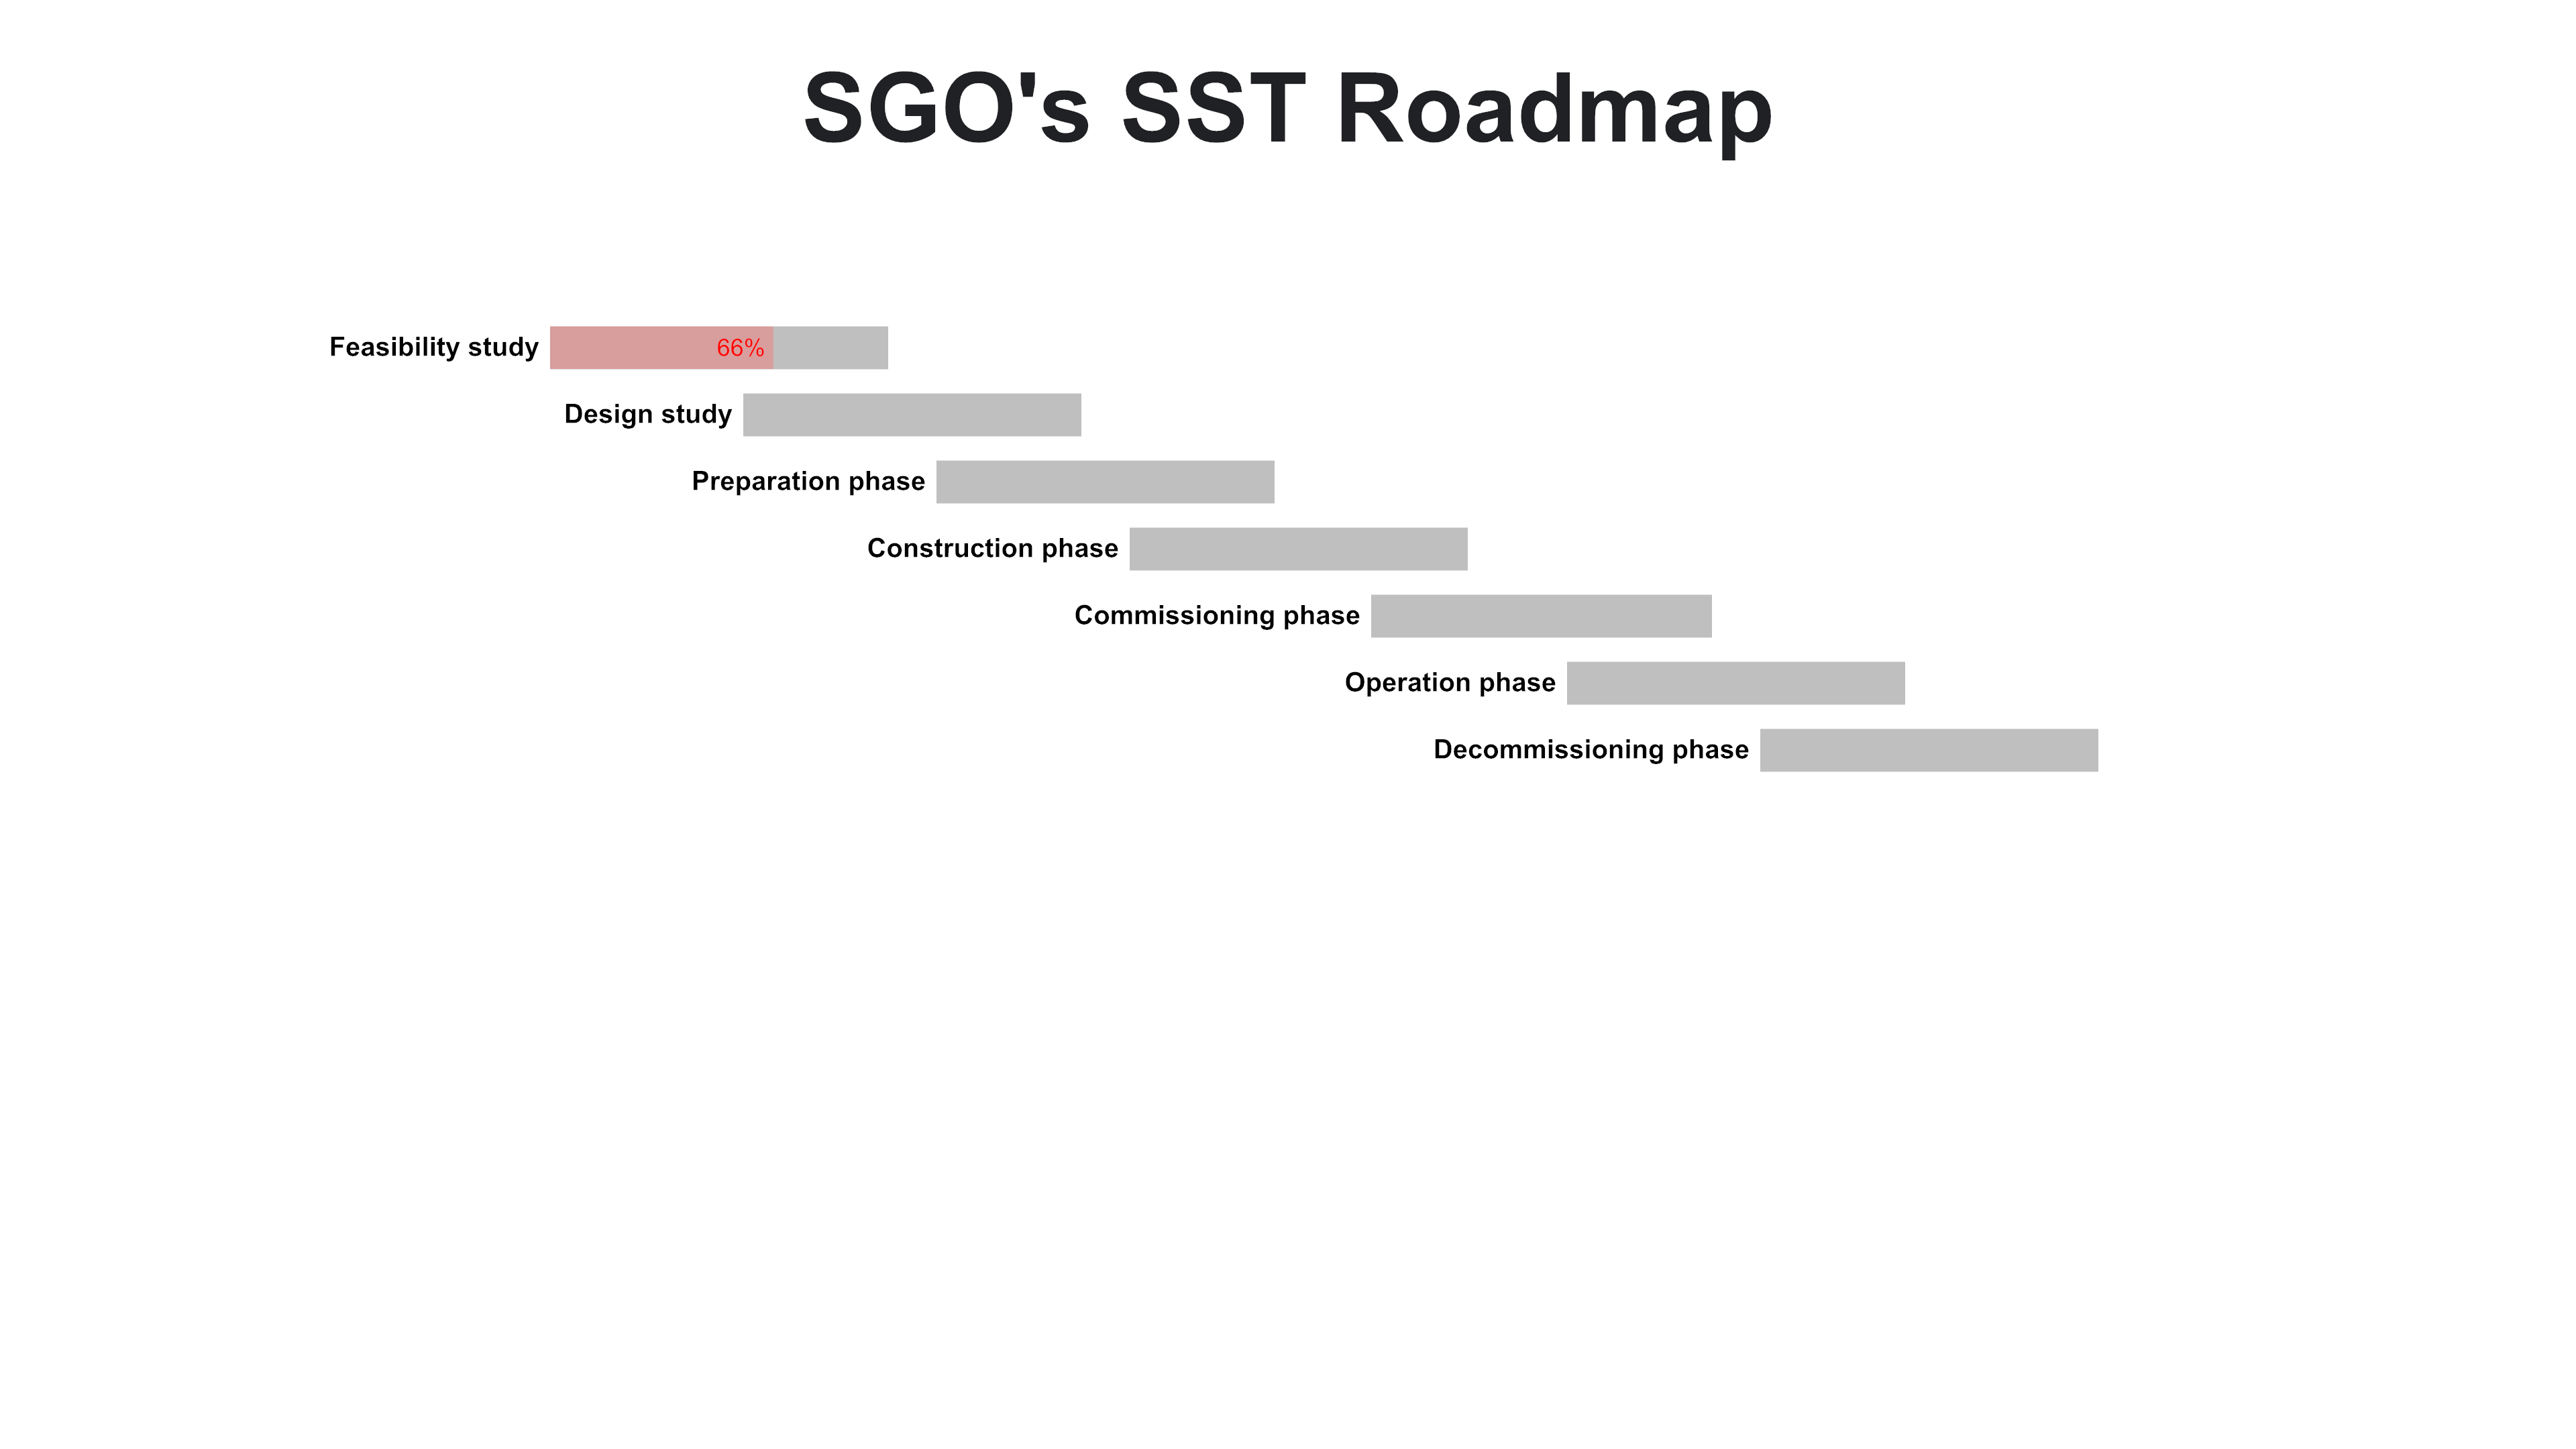 SST-roadmap;